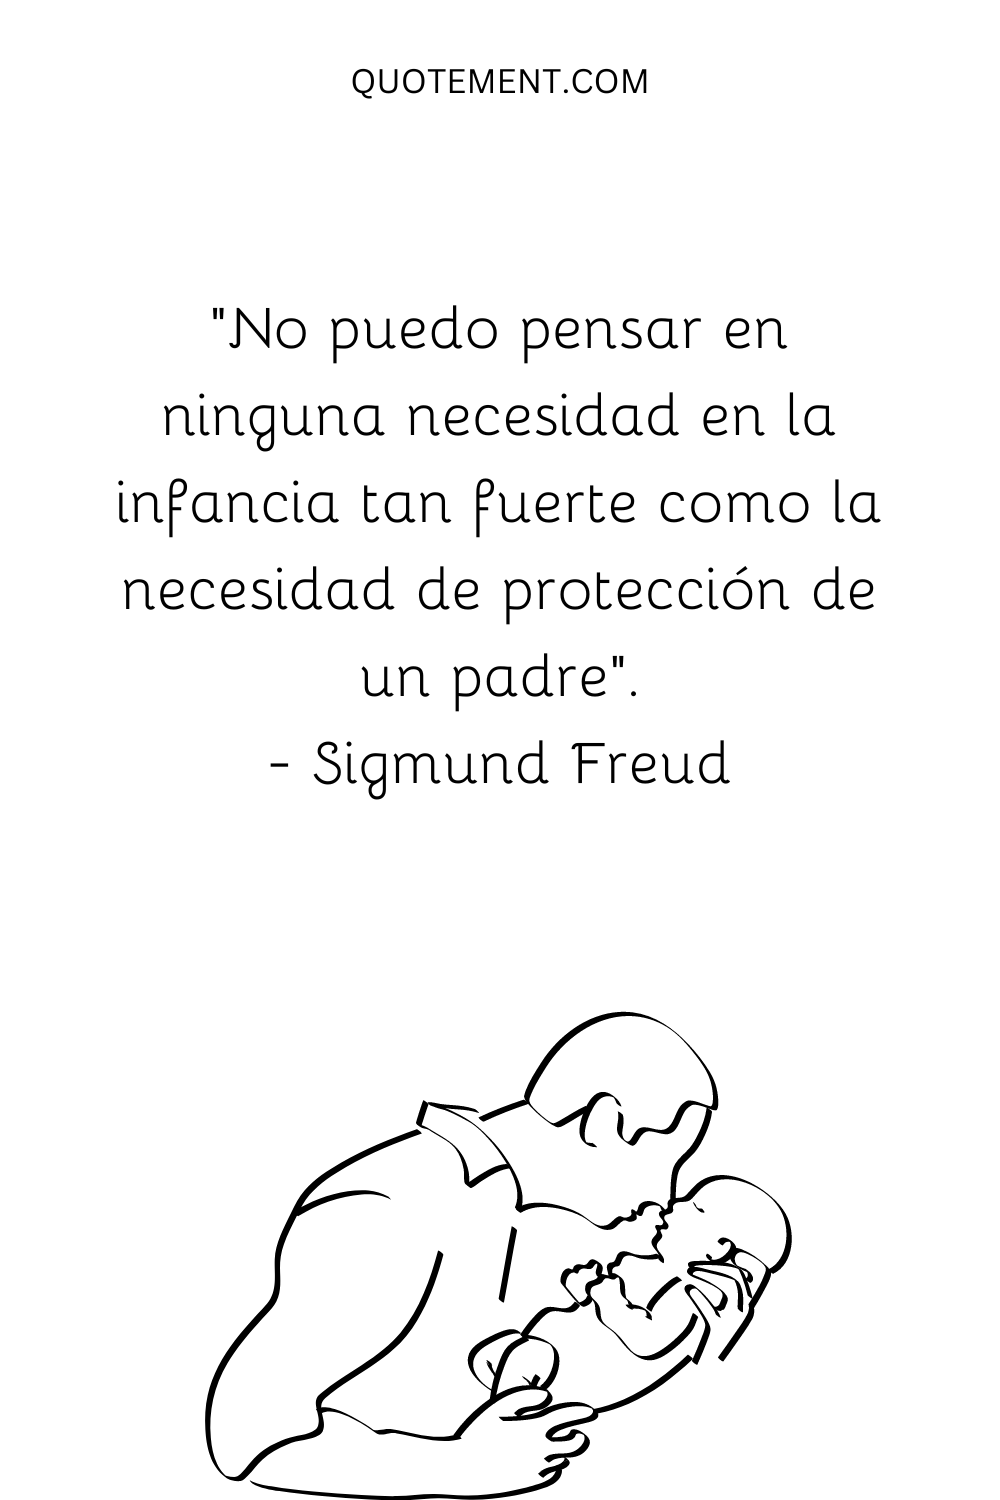 "No puedo pensar en ninguna necesidad en la infancia tan fuerte como la necesidad de protección de un padre". - Sigmund Freud